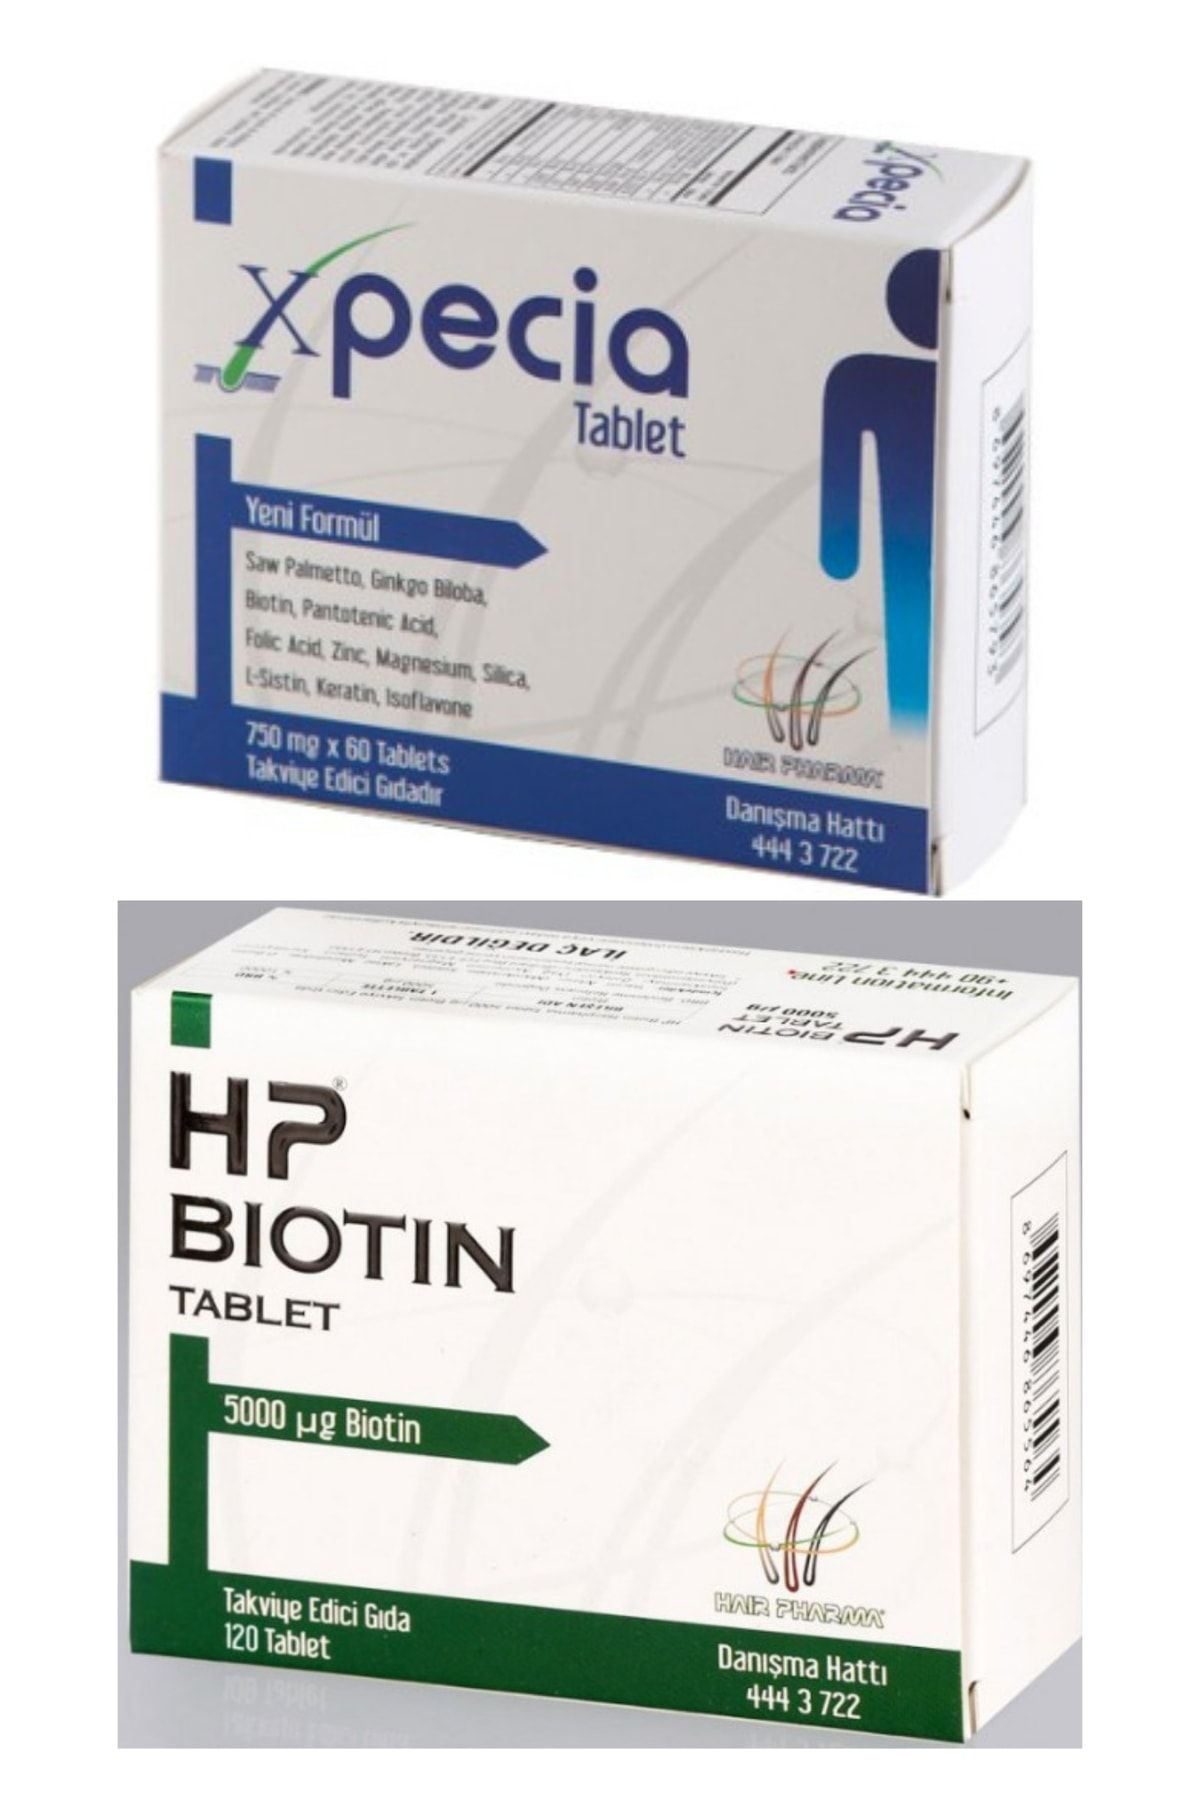 Xpecia Erkek 60 Tablet + Hp Biotin Tablet 5 Mg Biotin 120 Tablet